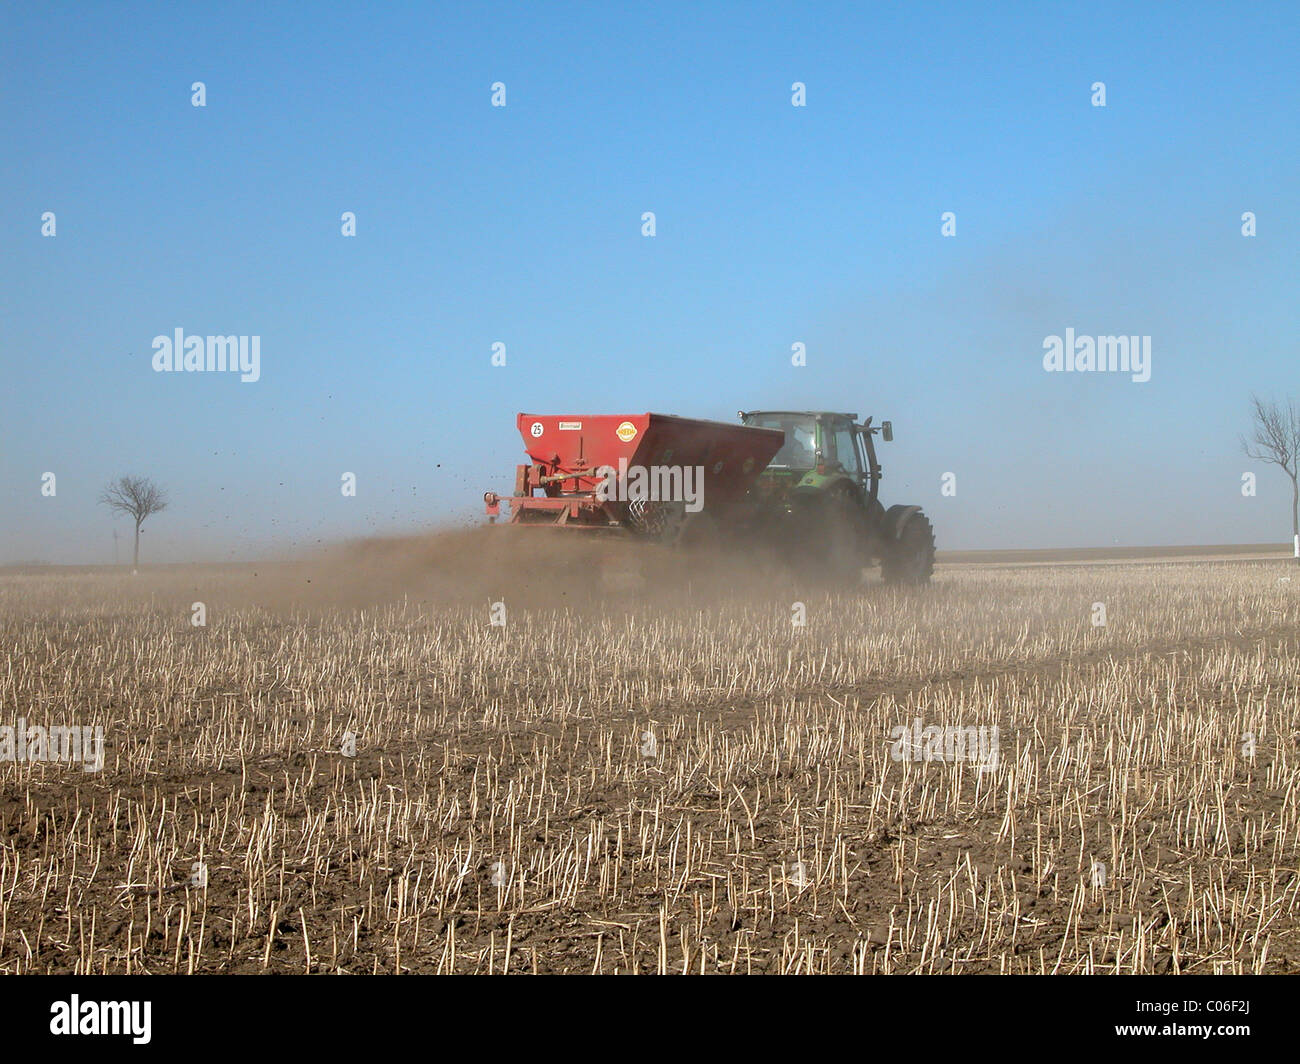 tractor Stock Photo